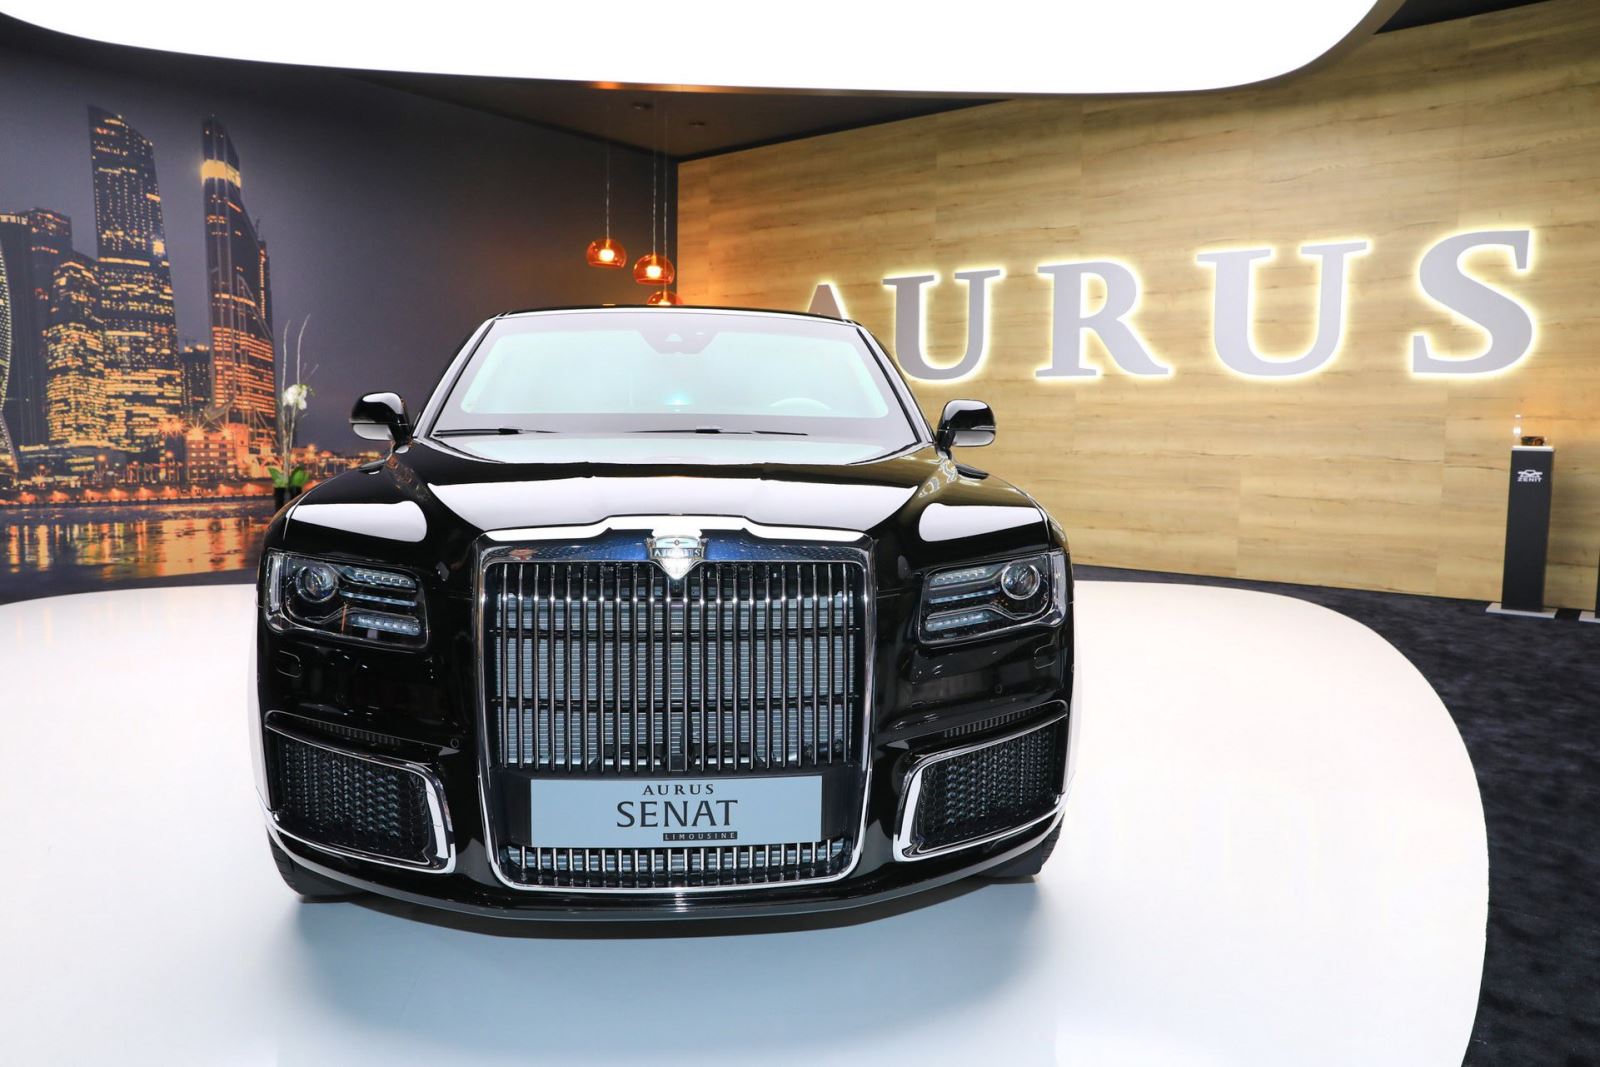 2 mẫu sedan và limousine của Aurus - thương hiệu được mệnh danh là "Rolls-Royce của nước Nga" đã chính thức trình diện khách hàng châu Âu tại triển lãm Geneva và nhận được không ít lời tán dương. Rolls-Royce hay Bentley cũng phải dè chừng. 3